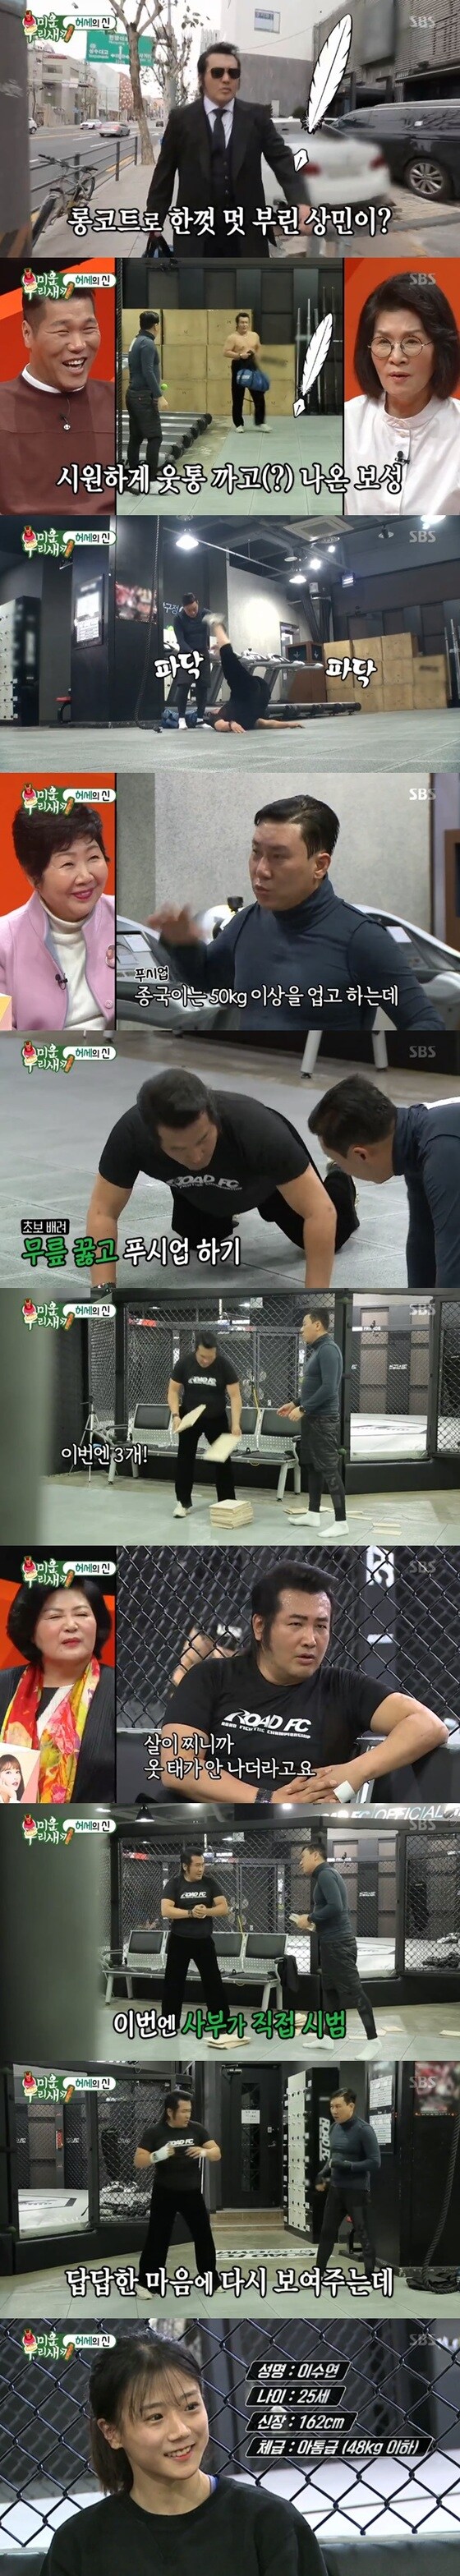 SBS '미운우리새끼' 방송 화면 캡처© 뉴스1